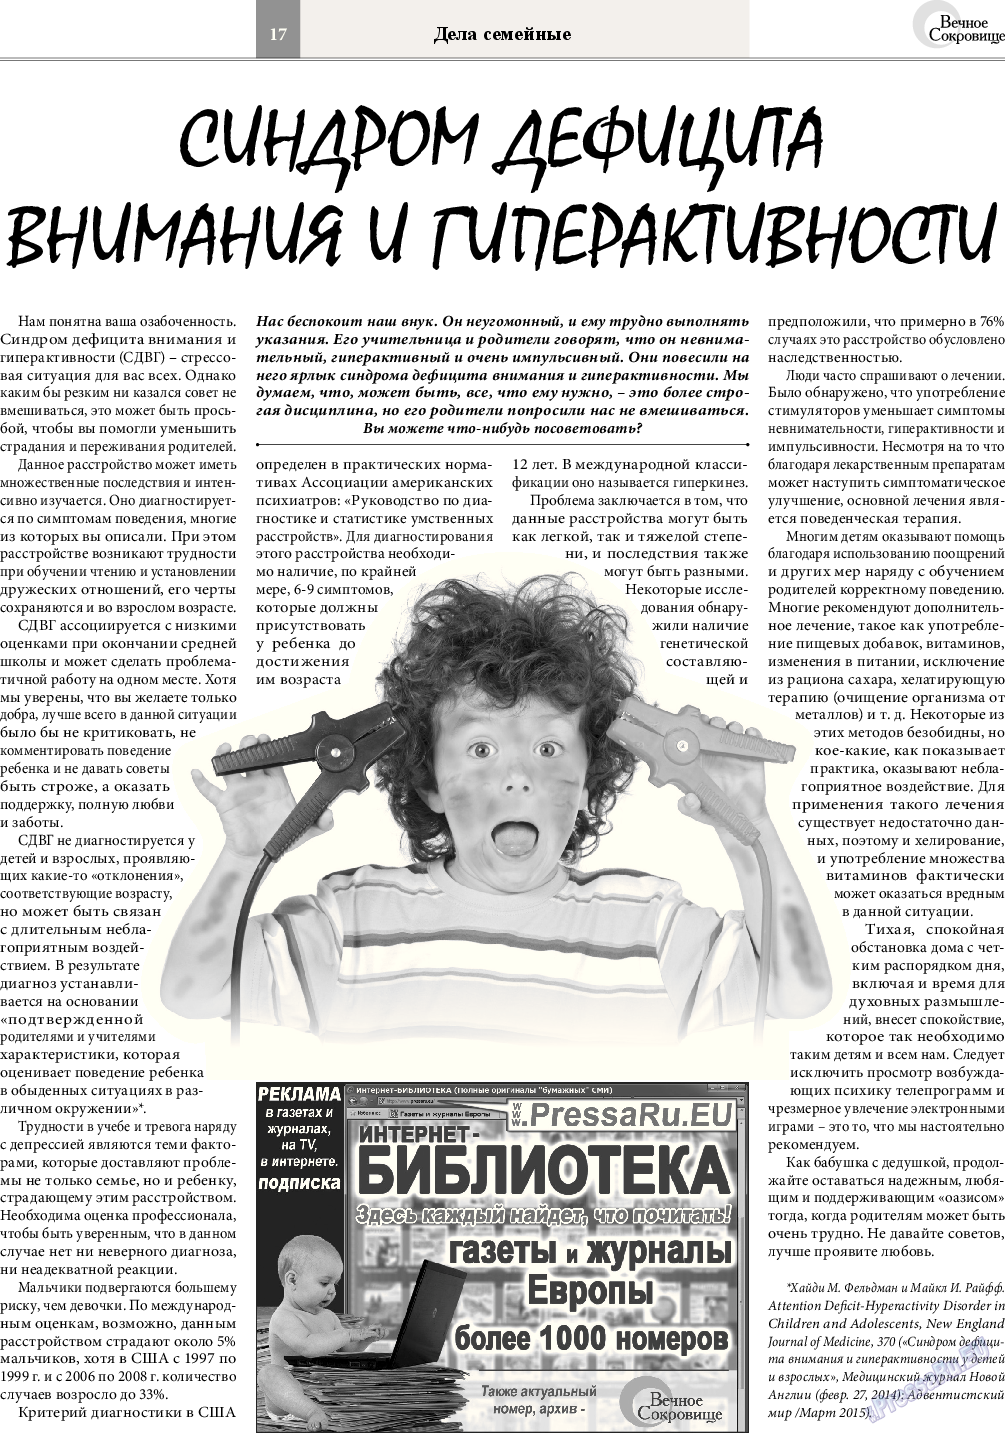 Вечное сокровище, газета. 2015 №2 стр.17